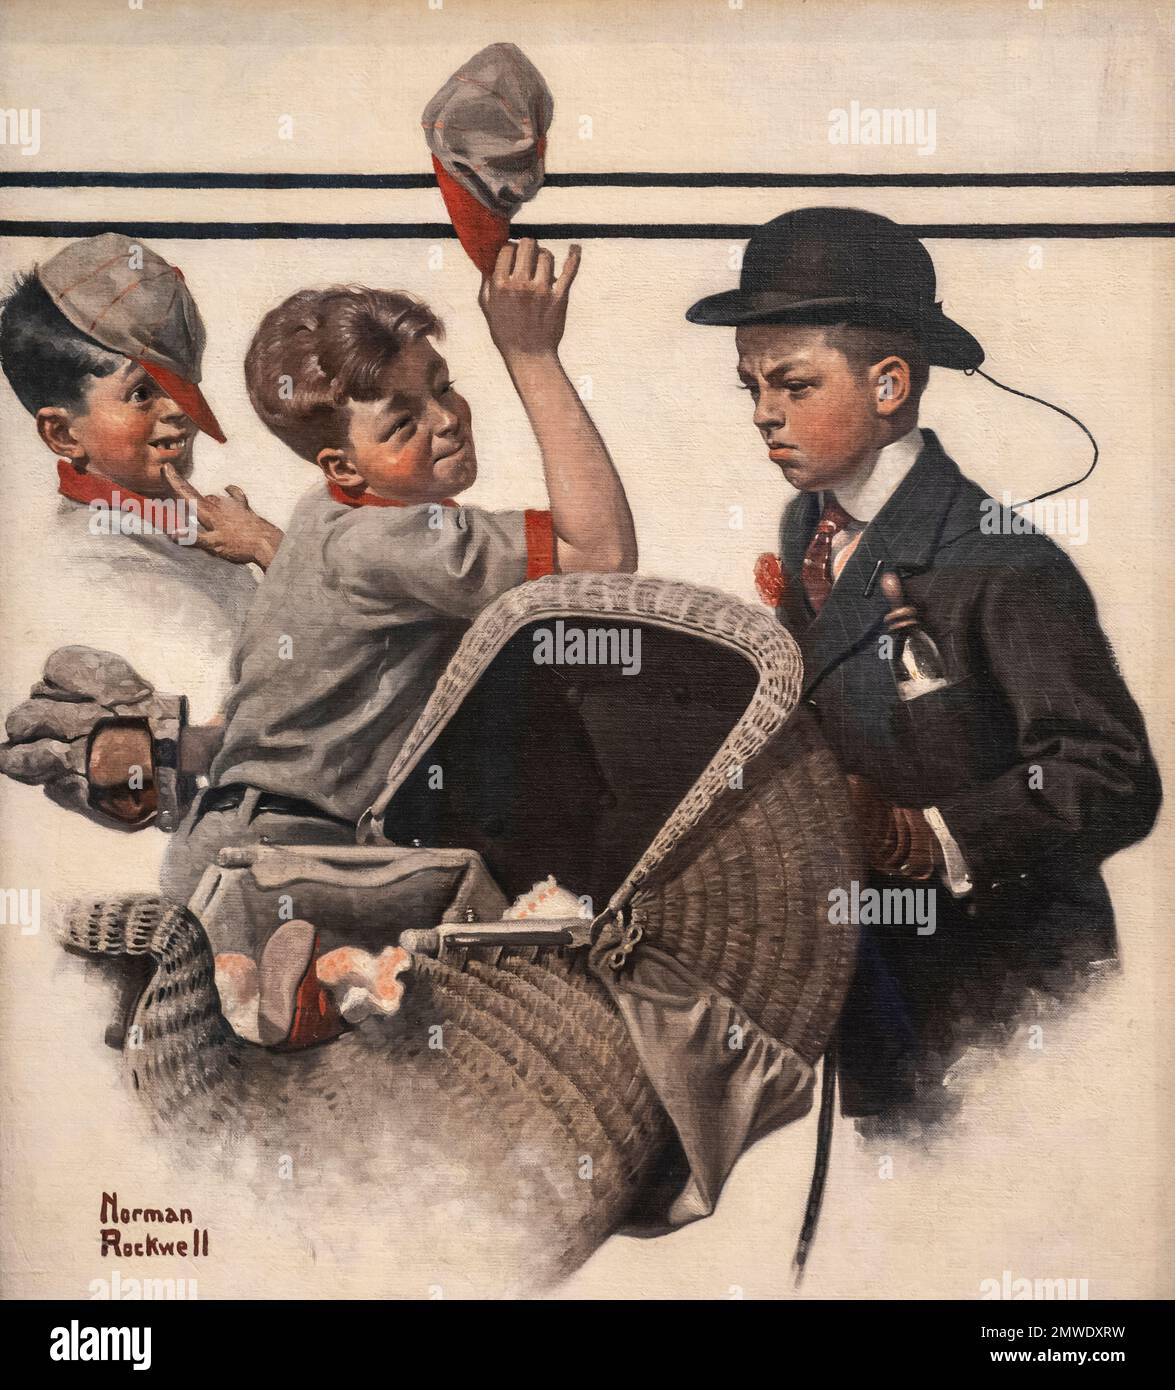 Norman Rockwell primera portada de la revista Saturday Evening Post en 1916 llamada Boy With Baby Carriage que ilustró el cambio de normas en la sociedad de Foto de stock